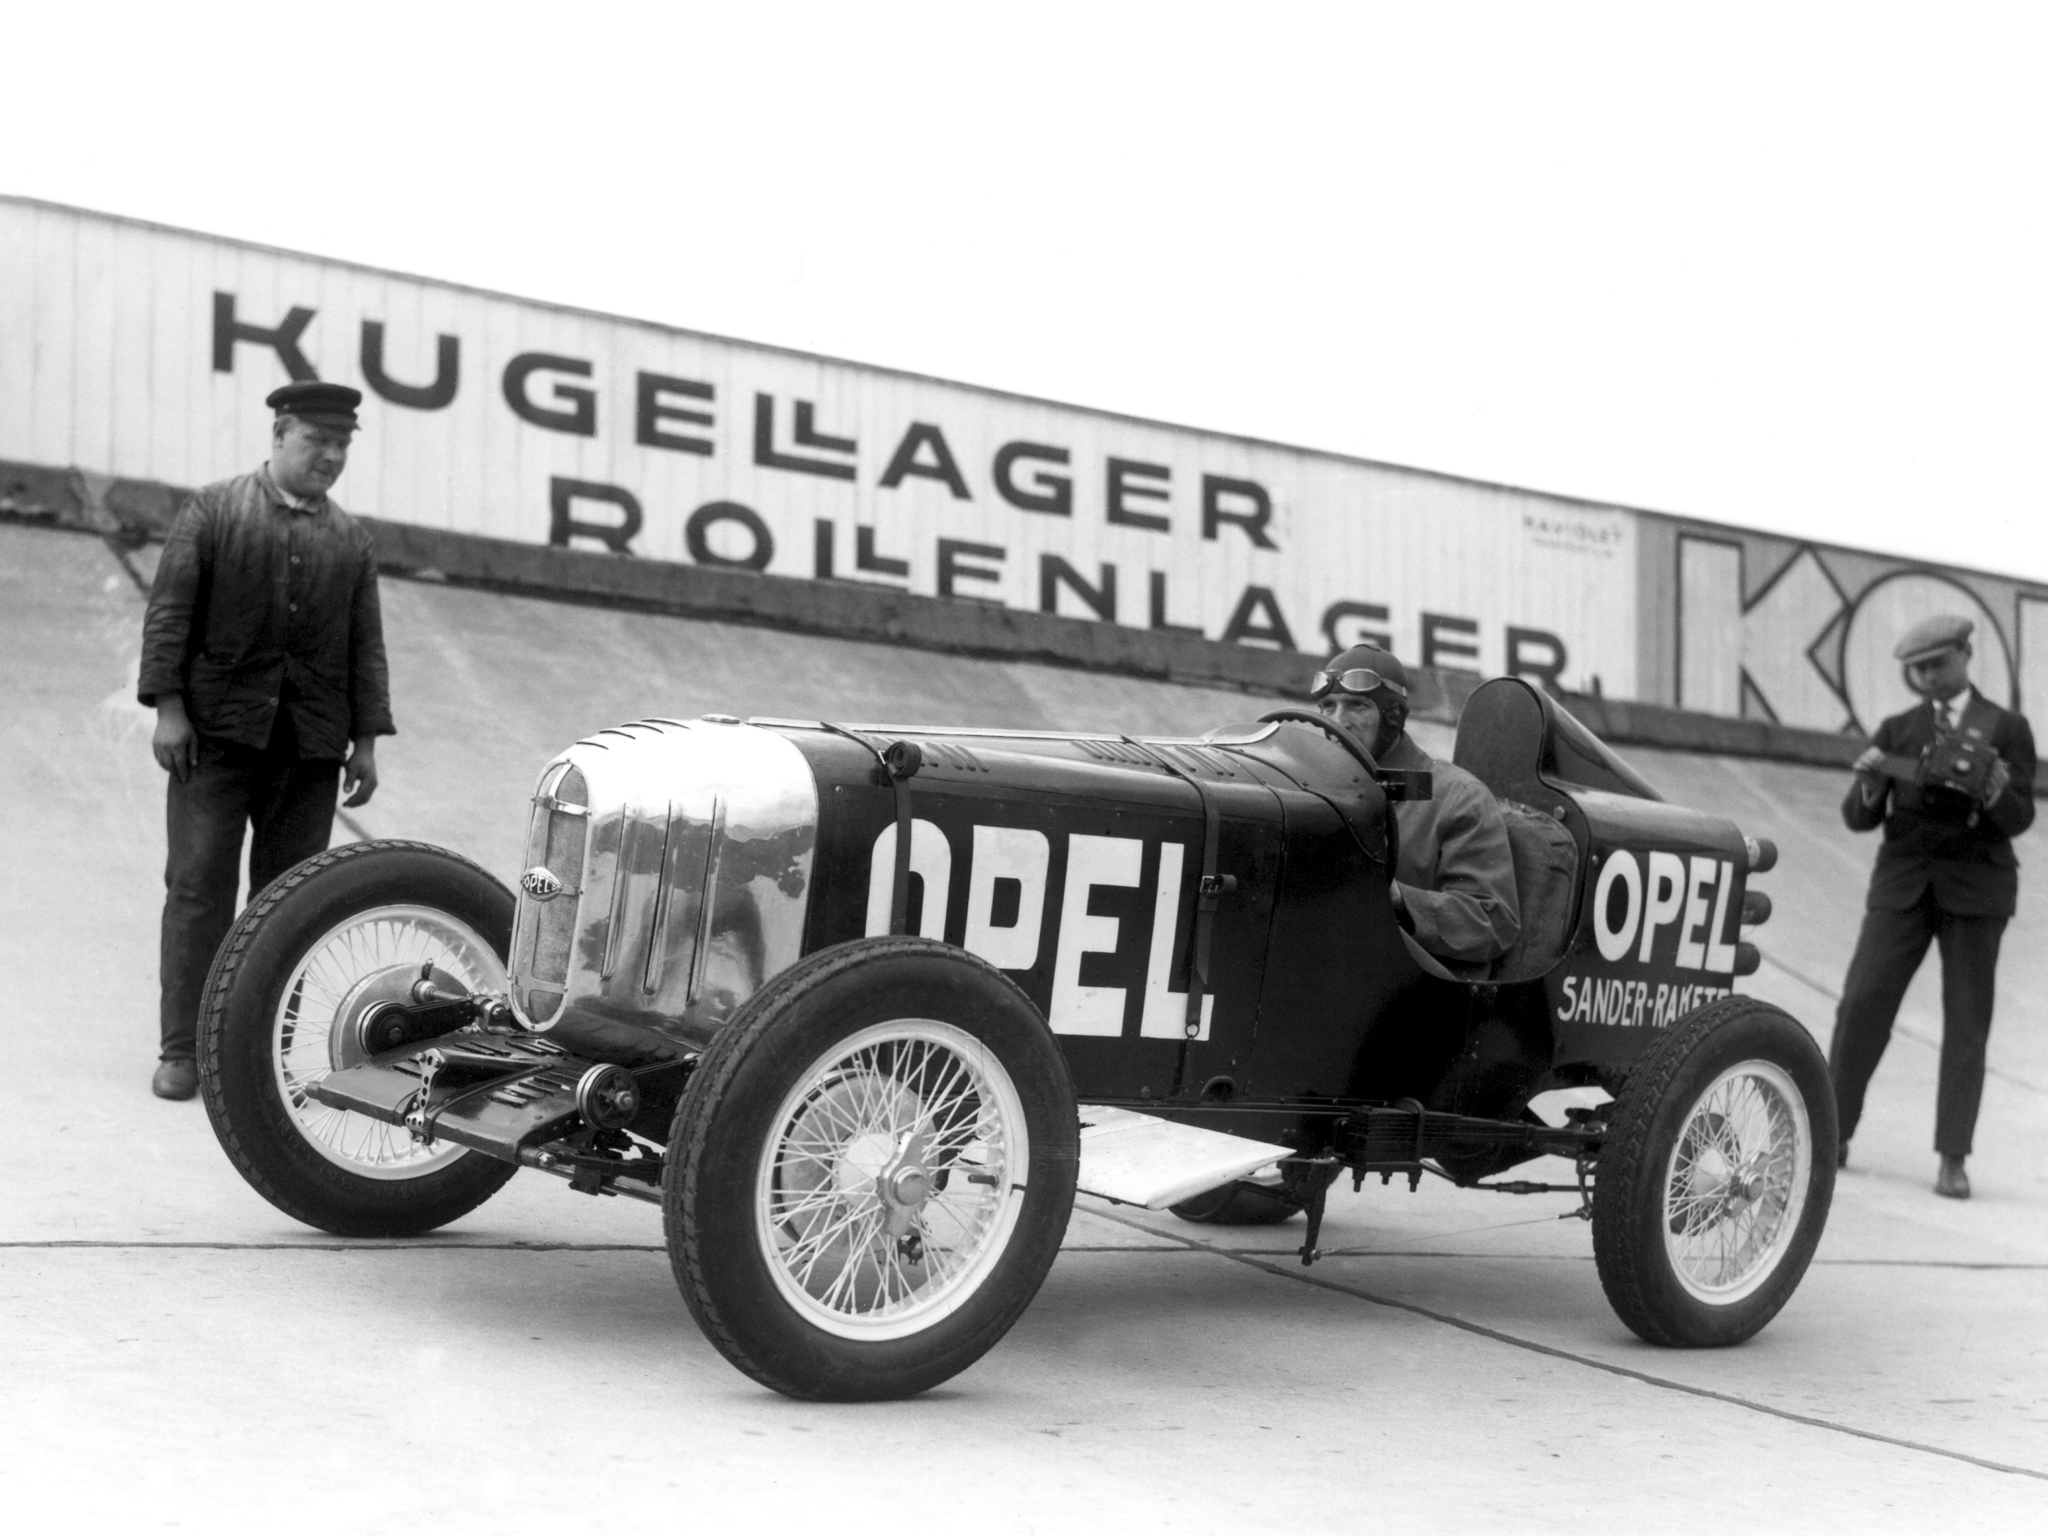 1928, Opel, Rak1, Retro, Race, Racing, B w Wallpaper